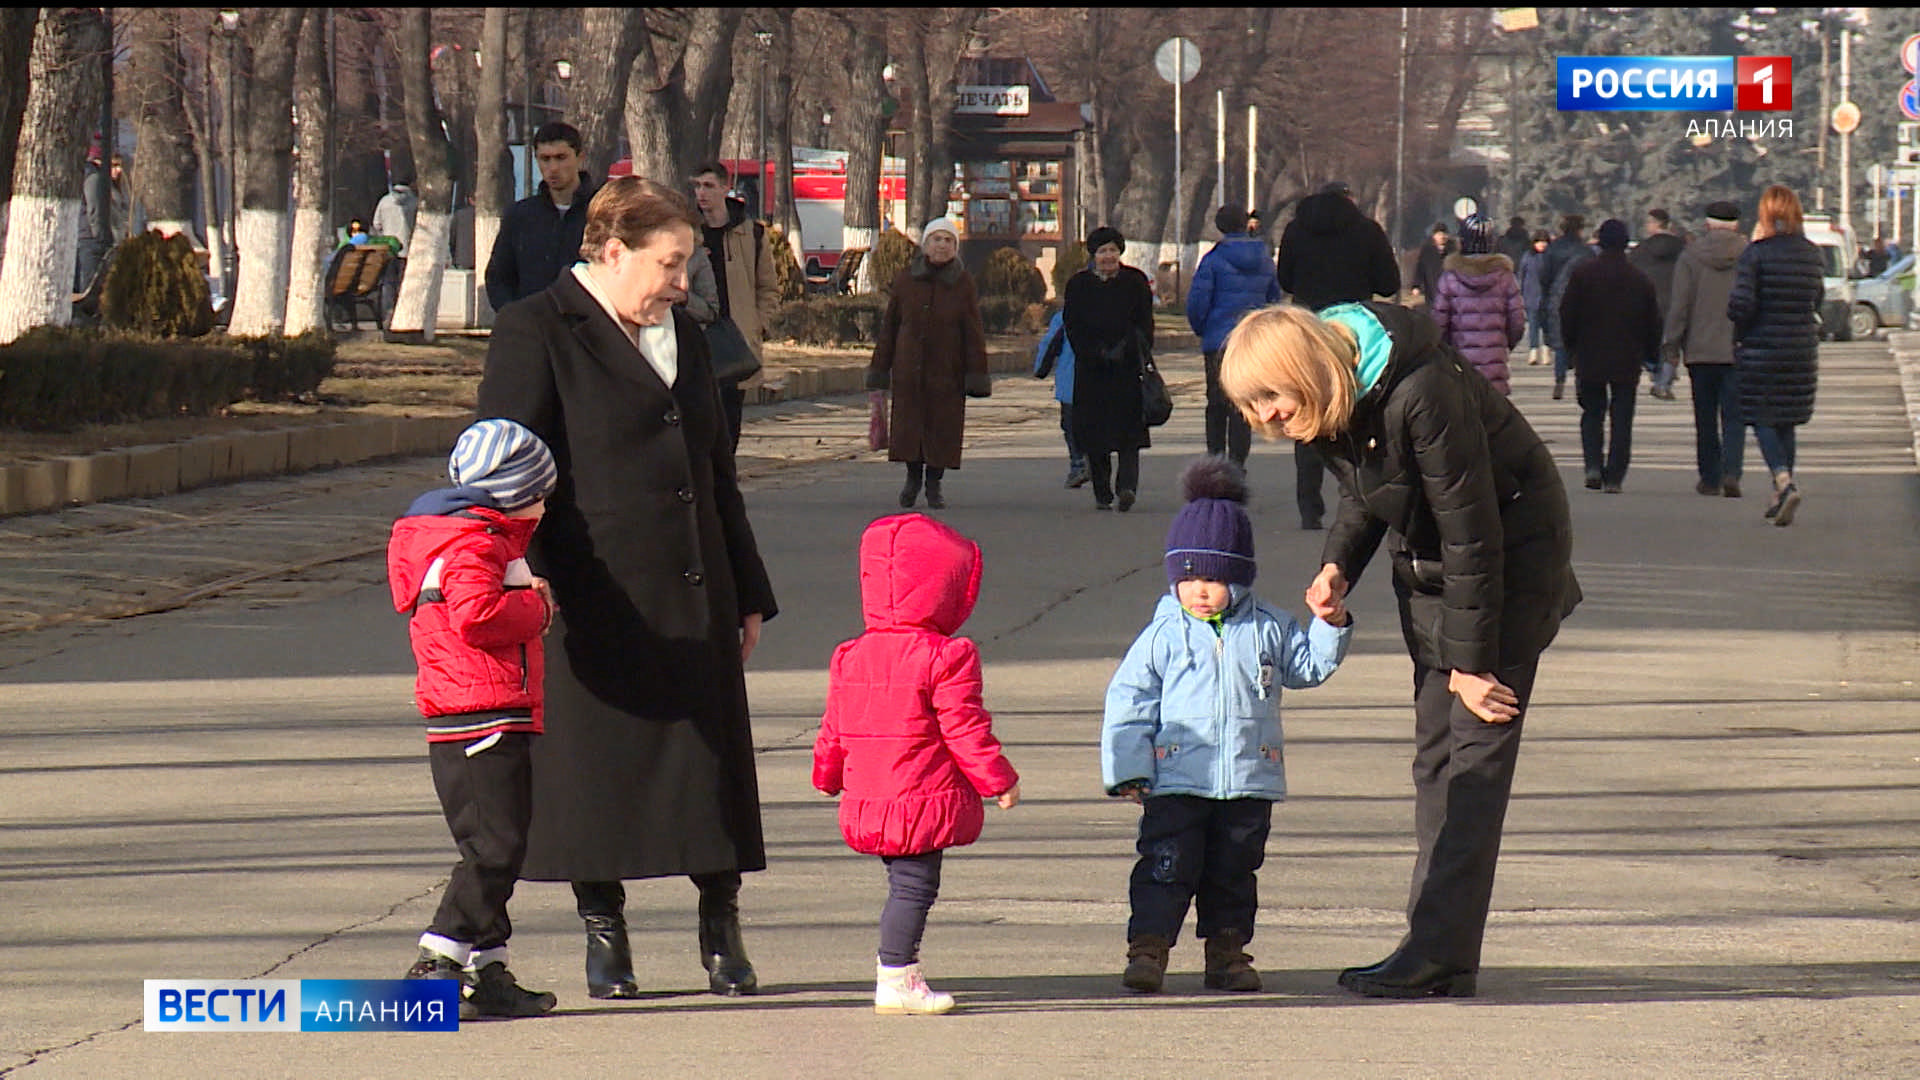 С начала года новое единое пособие в Северной Осетии было выплачено родителям 19,6 тыс. детей и 677 беременным женщинам